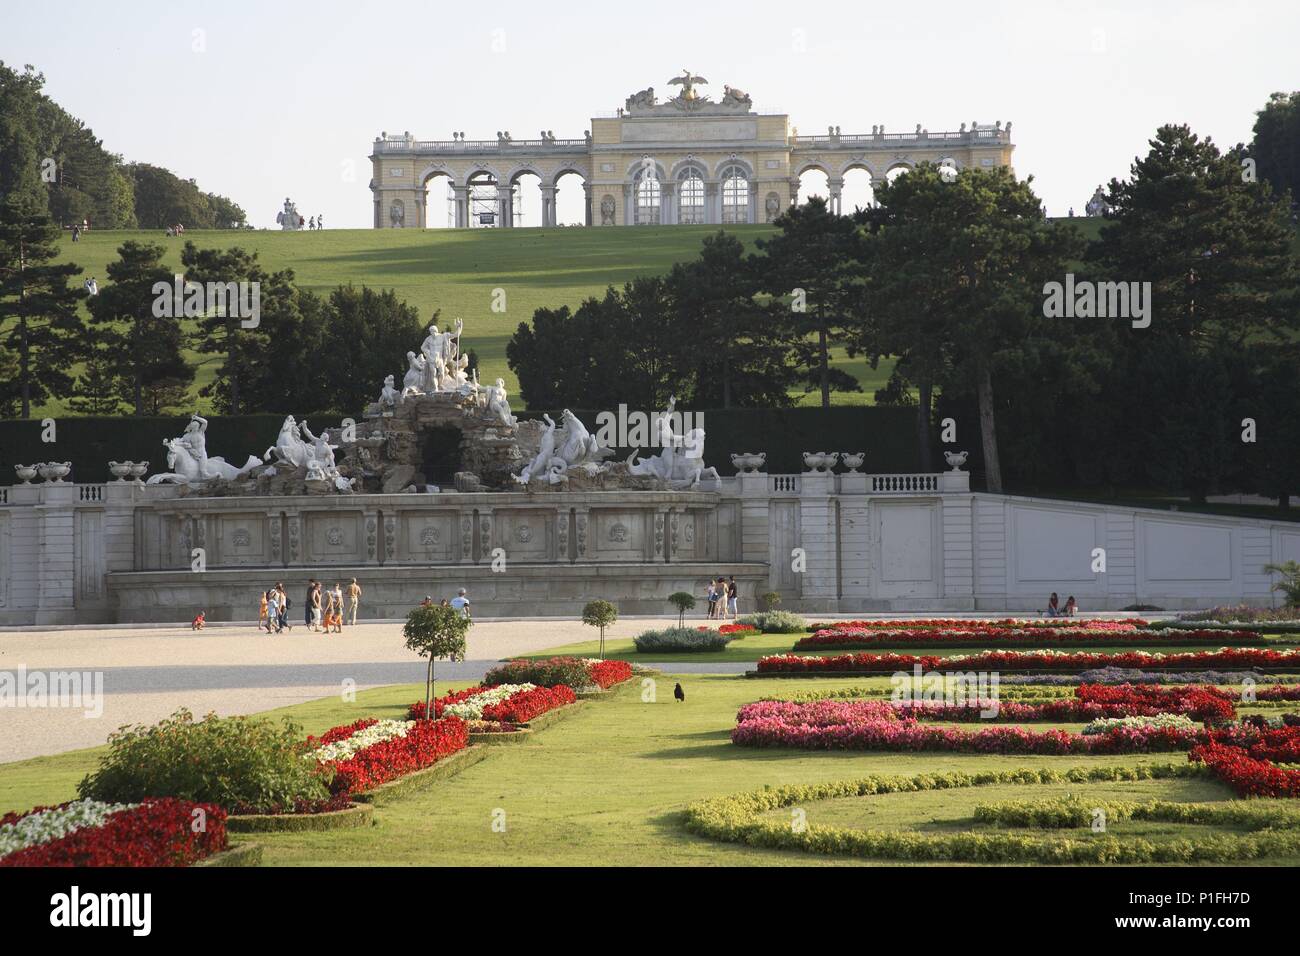 . Viena / Wien; Schönbrunn: vista a los jardines , fuente de Neptuno y 'Gloriette' o Pabellón (parte alta). Stock Photo